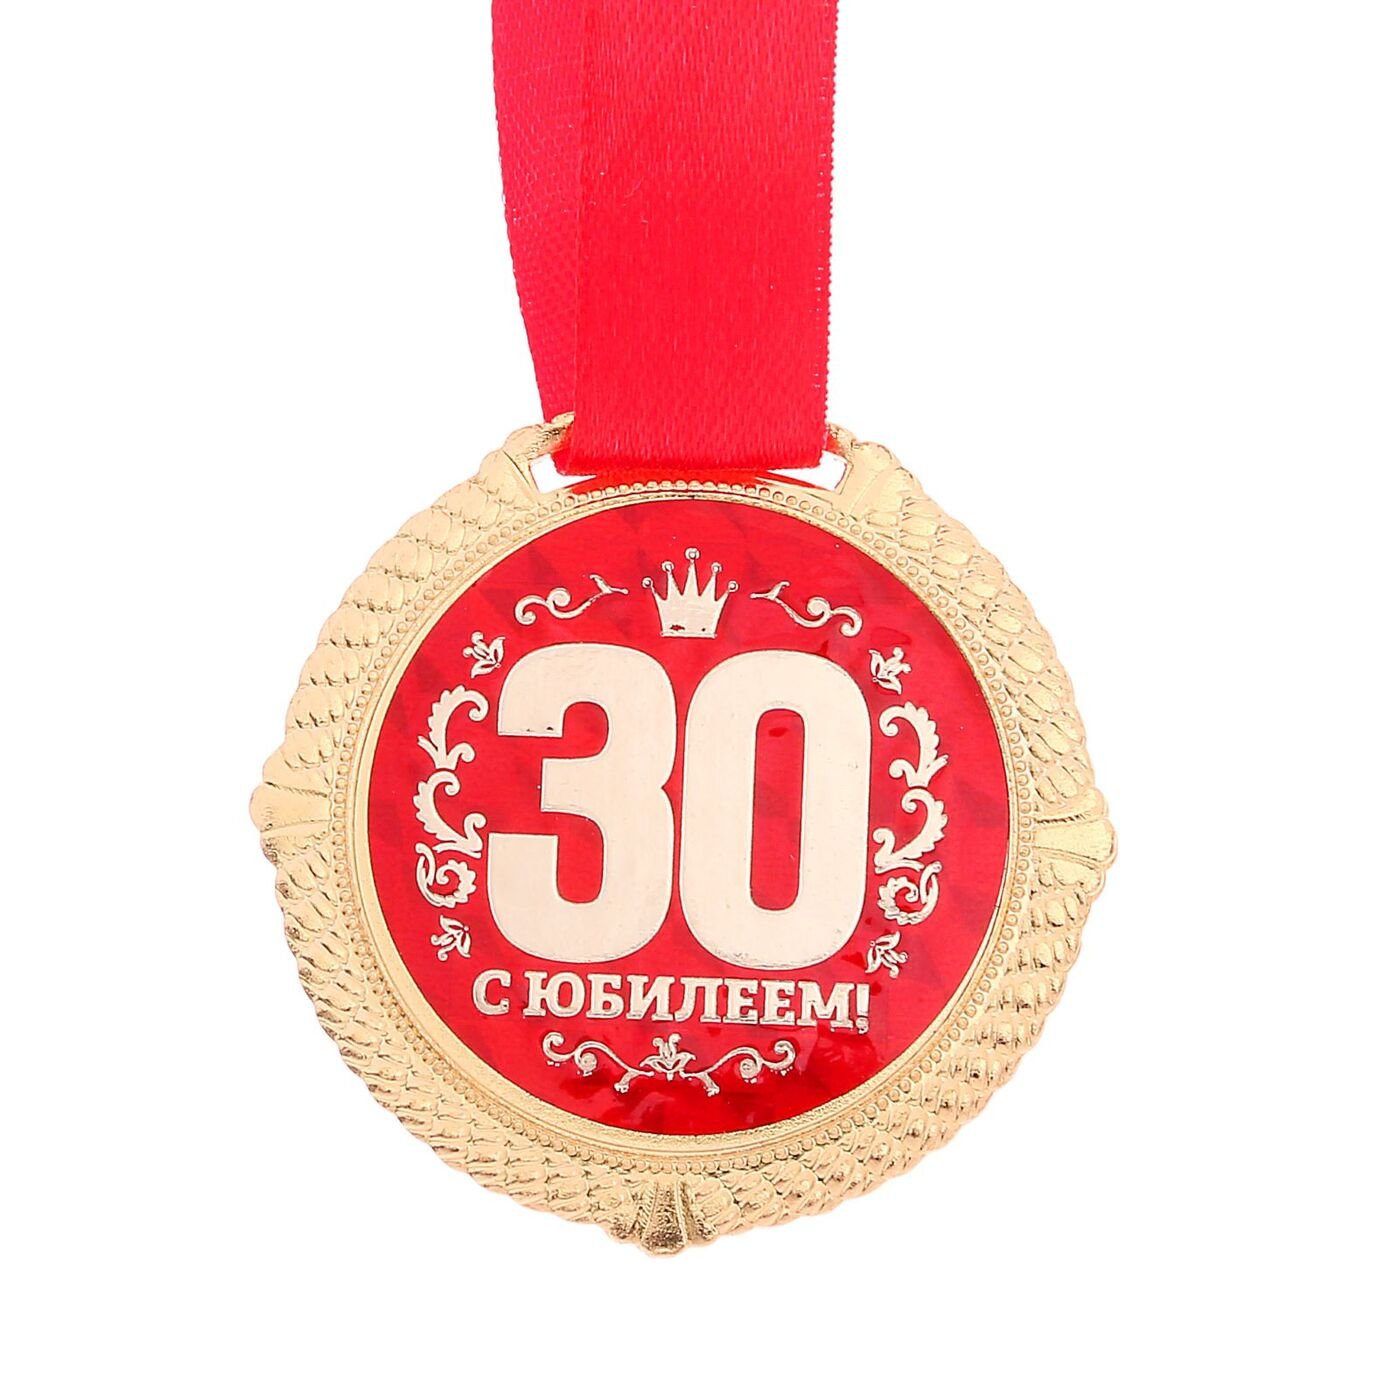 Смешные поздравления с днем рождения 30 лет. С юбилеем 30 лет. Медаль с юбилеем. Медаль 30 лет. Медаль 30 лет юбилей.